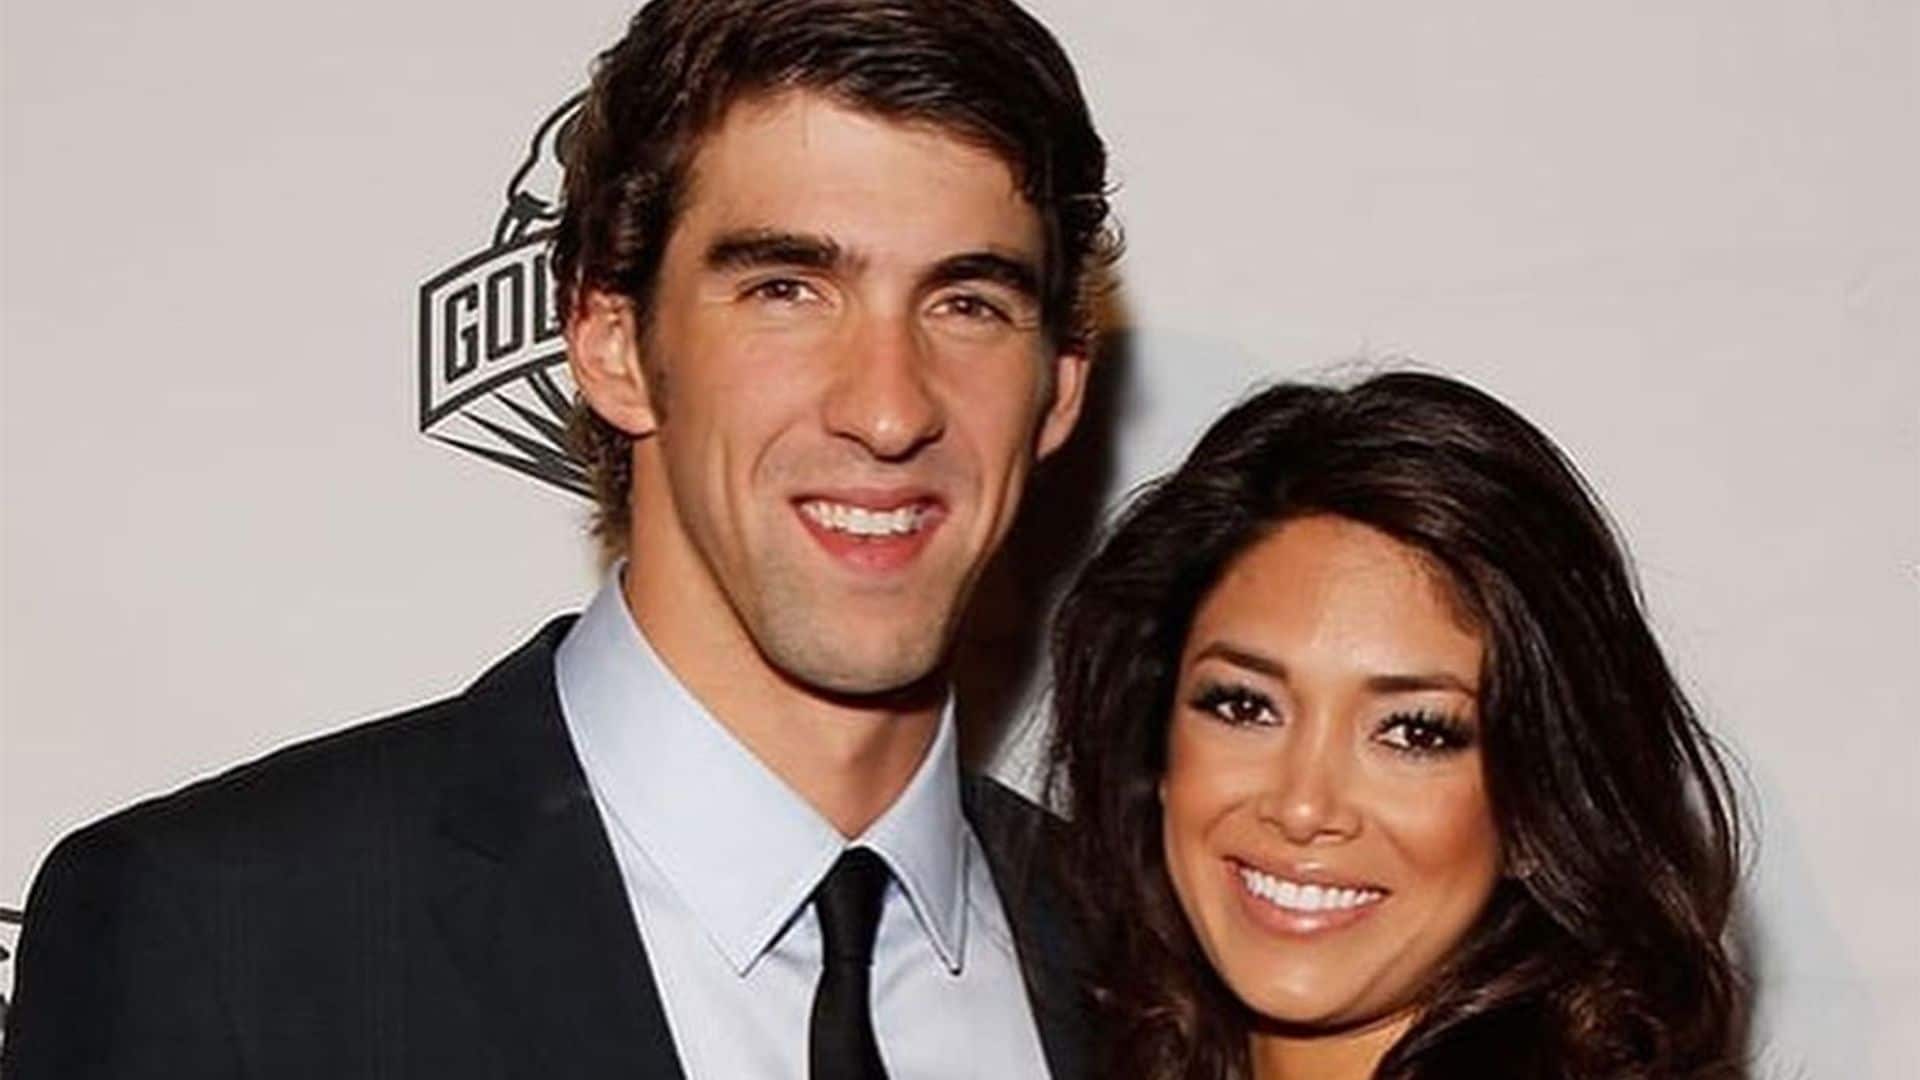 La esposa de Michael Phelps teme perder a su marido por la grave depresión que padece